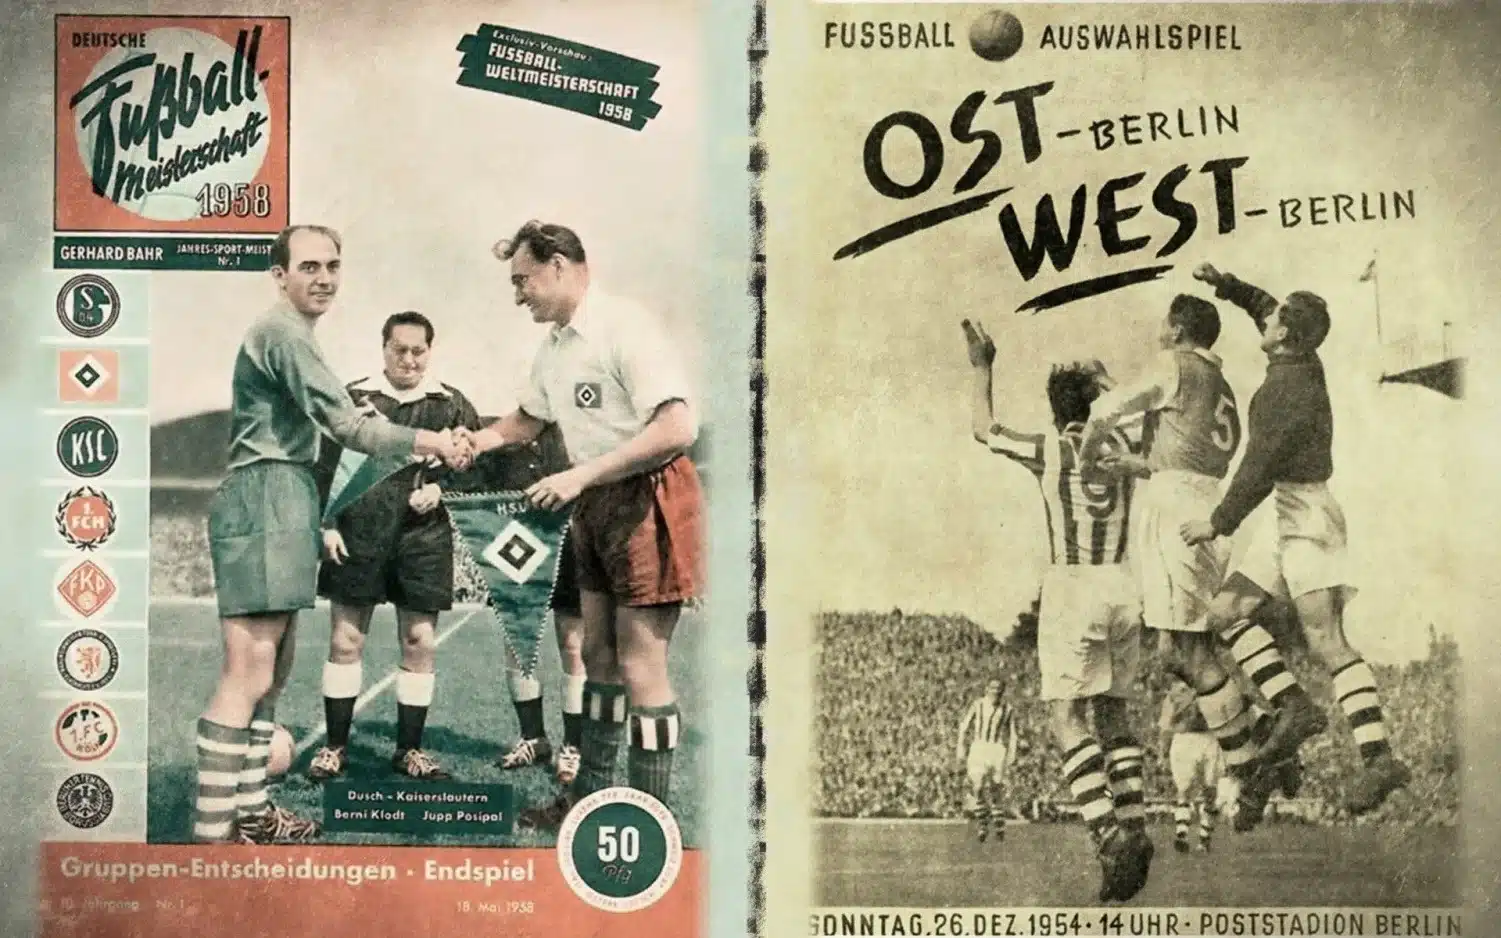 Fond d'écran clin d’œil au championnat d'Allemagne des années 50. Wallpaper réalisé pour la version vintage du jeu Fifa Manager (LFP Manager) . Conçu par un passionné et amateur